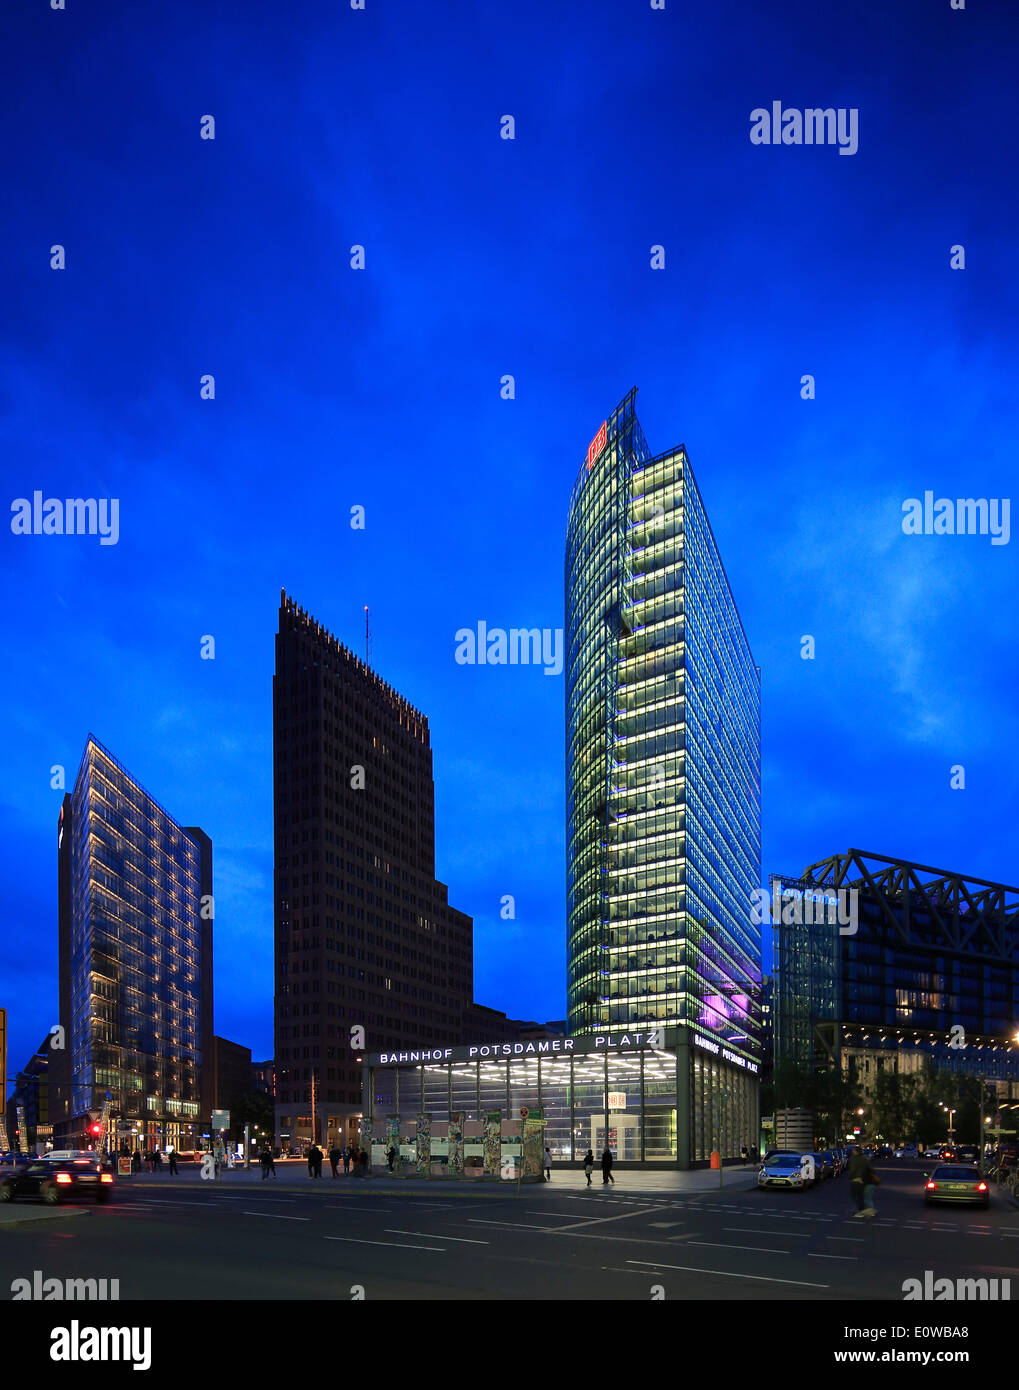 La plaza Potsdamer Platz con el rascacielos Renzo Piano 11, Torre Kollhoff, Bahn Tower, Sony Center, la estación de tren Foto de stock